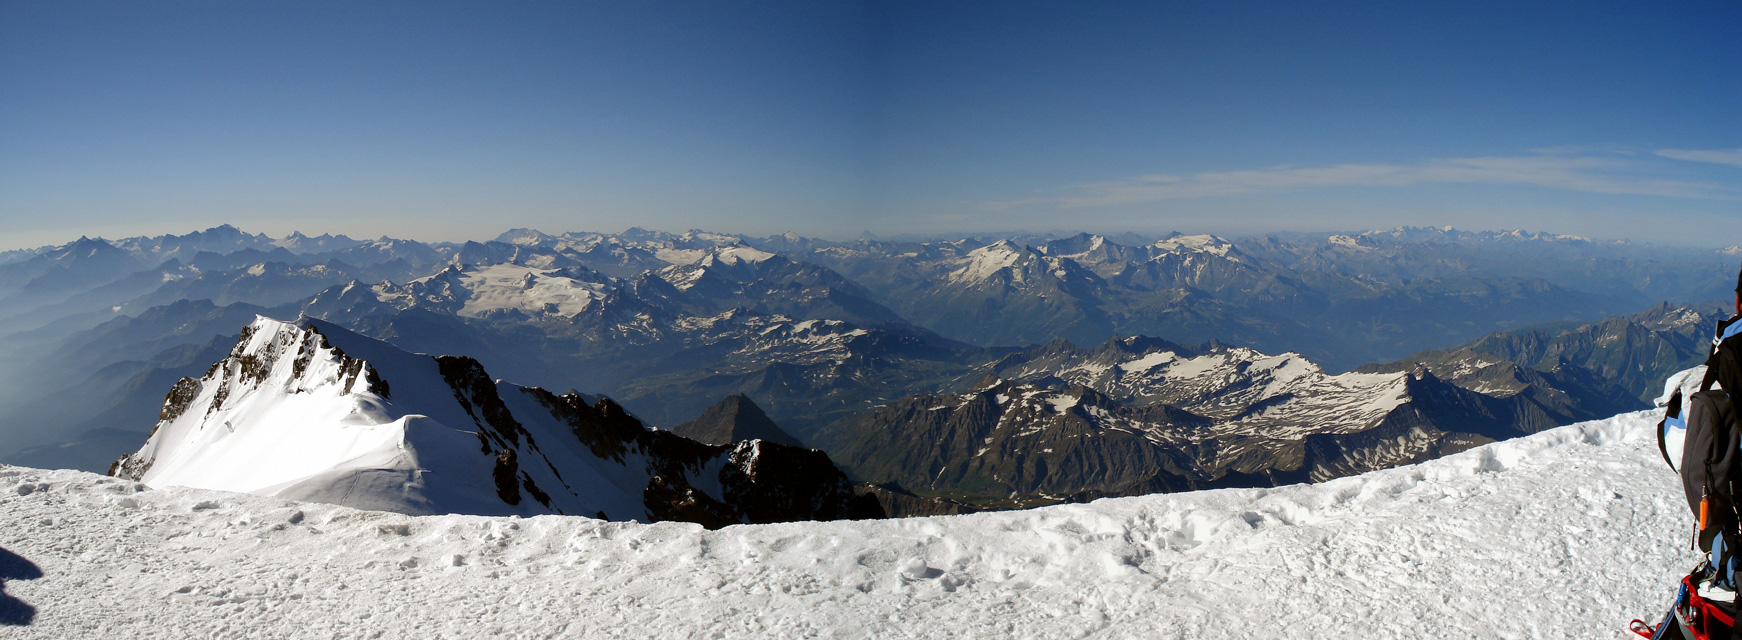 Admiramos la parte final de la vía italiana de ascenso al Mont-Blanc